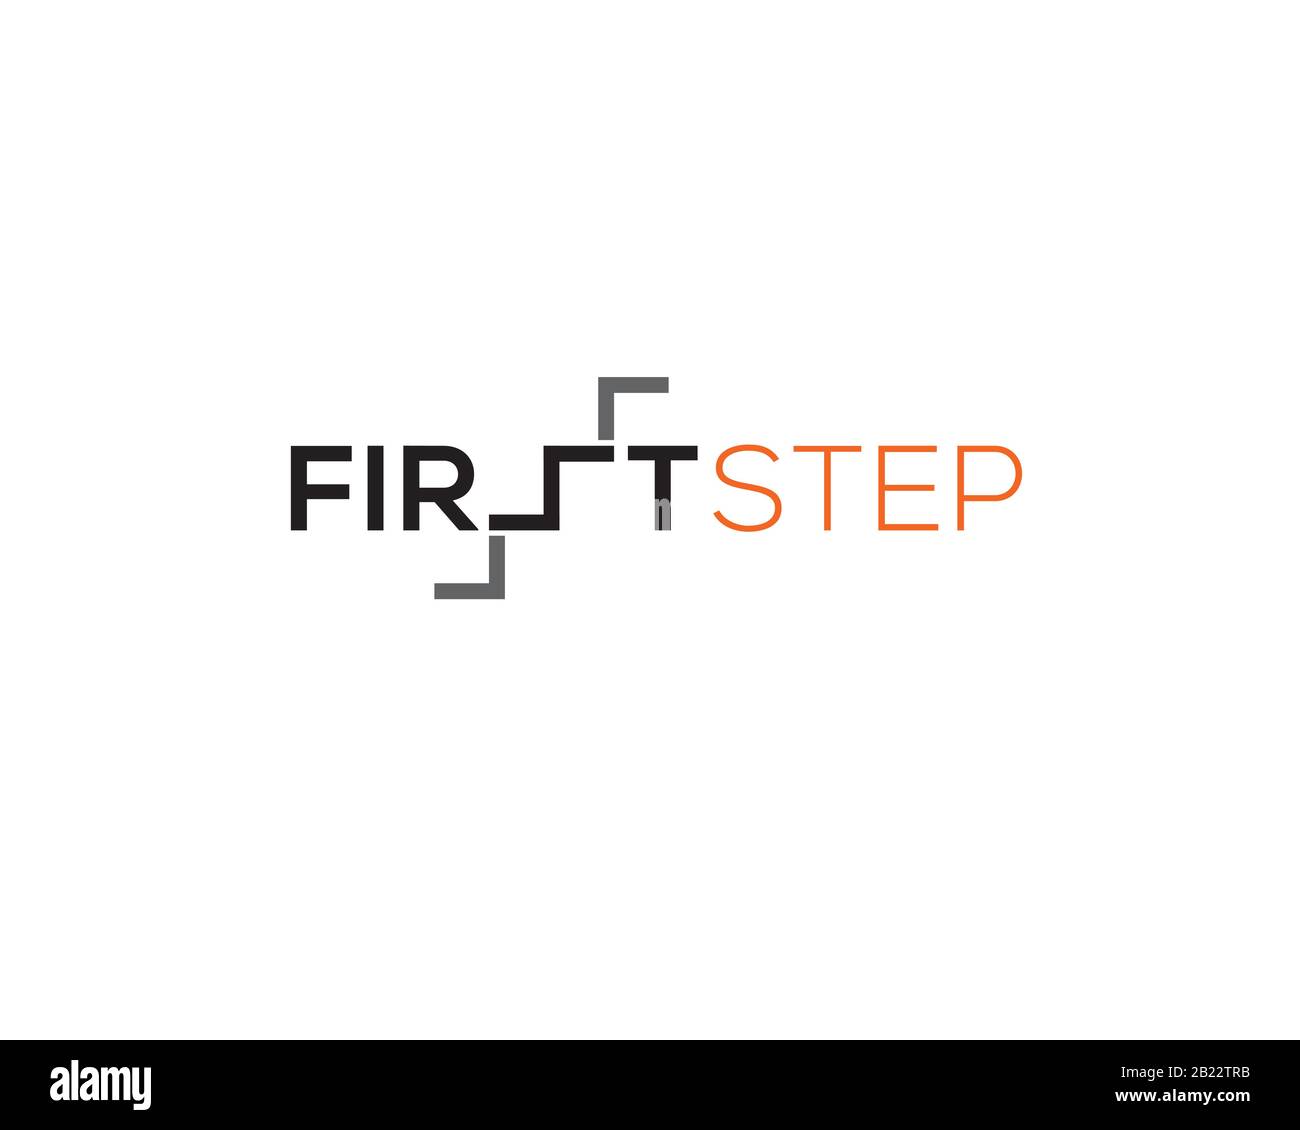 Wortmarke Typografie des ersten Schrittes mit Buchstaben s als oben Treppentiefe Stock Vektor